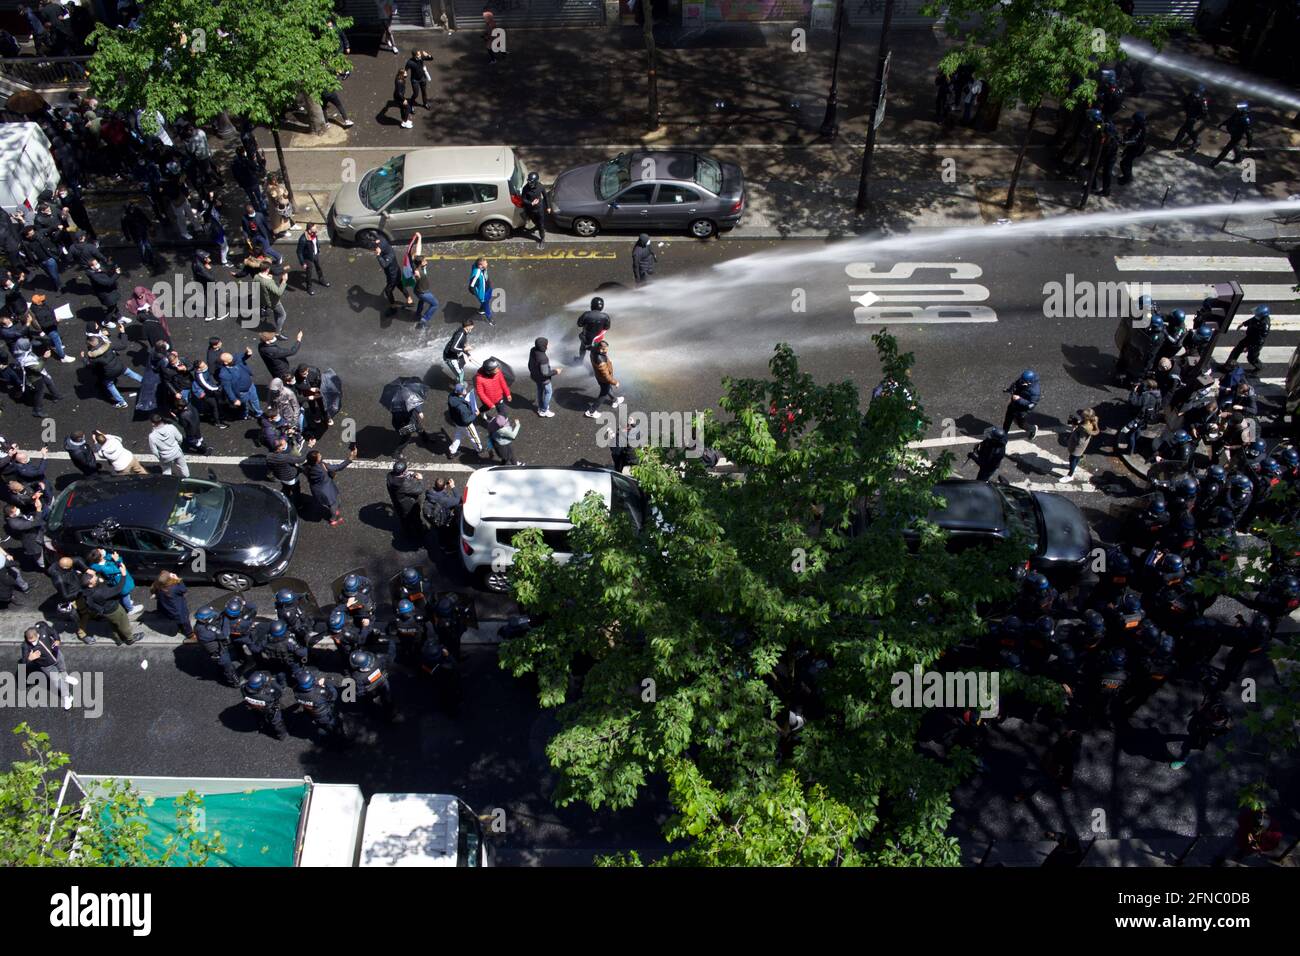 La policía dispara cañones de agua contra manifestantes propalestinos en París. Boulevard Barbès, París, Francia, 15th de mayo de 2021 Foto de stock